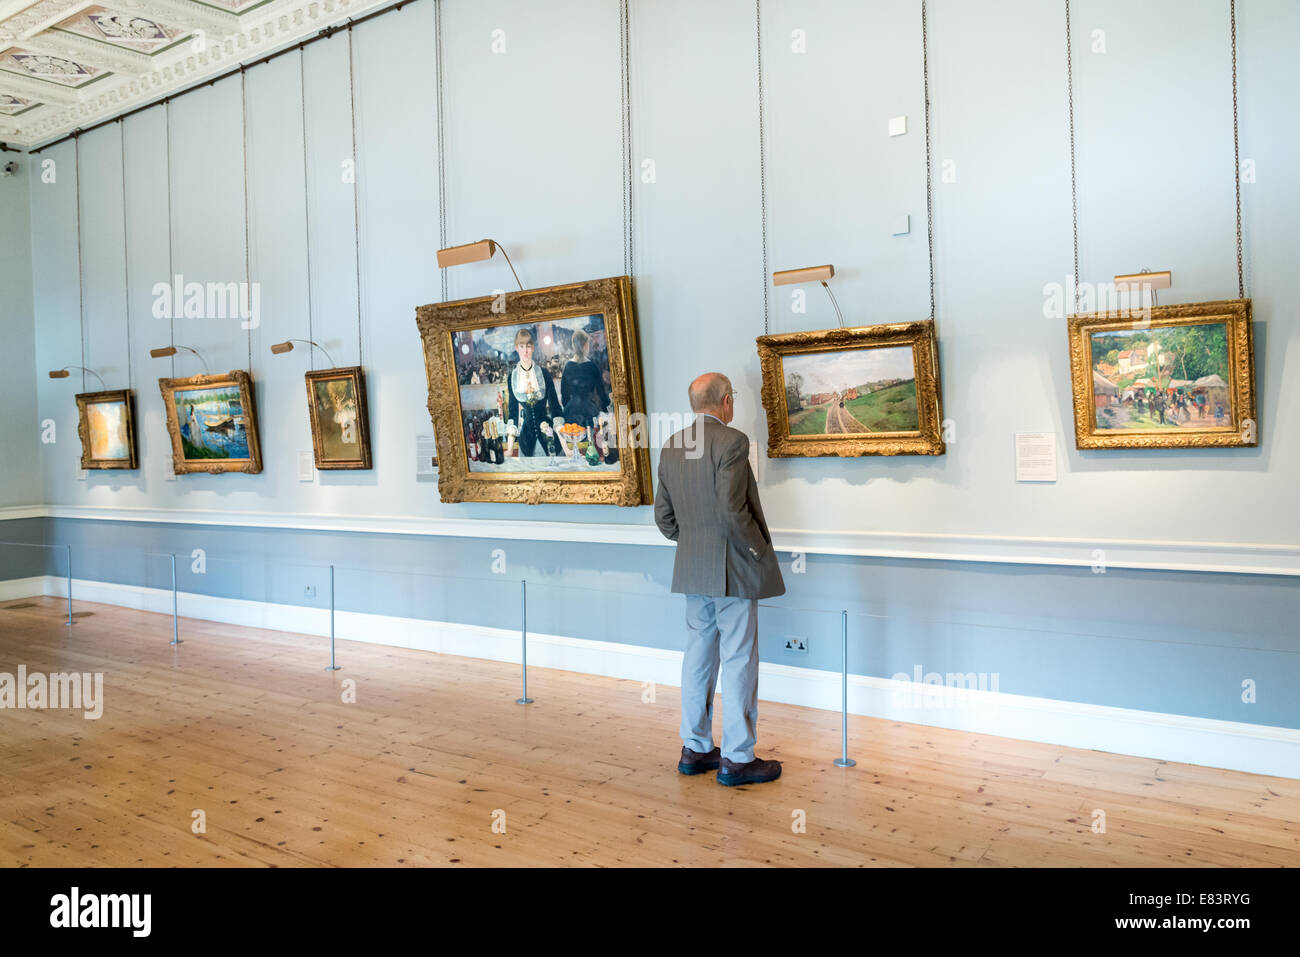 Dans les peintures impressionnistes Courtauld Gallery, Londres, Angleterre, Royaume-Uni Banque D'Images